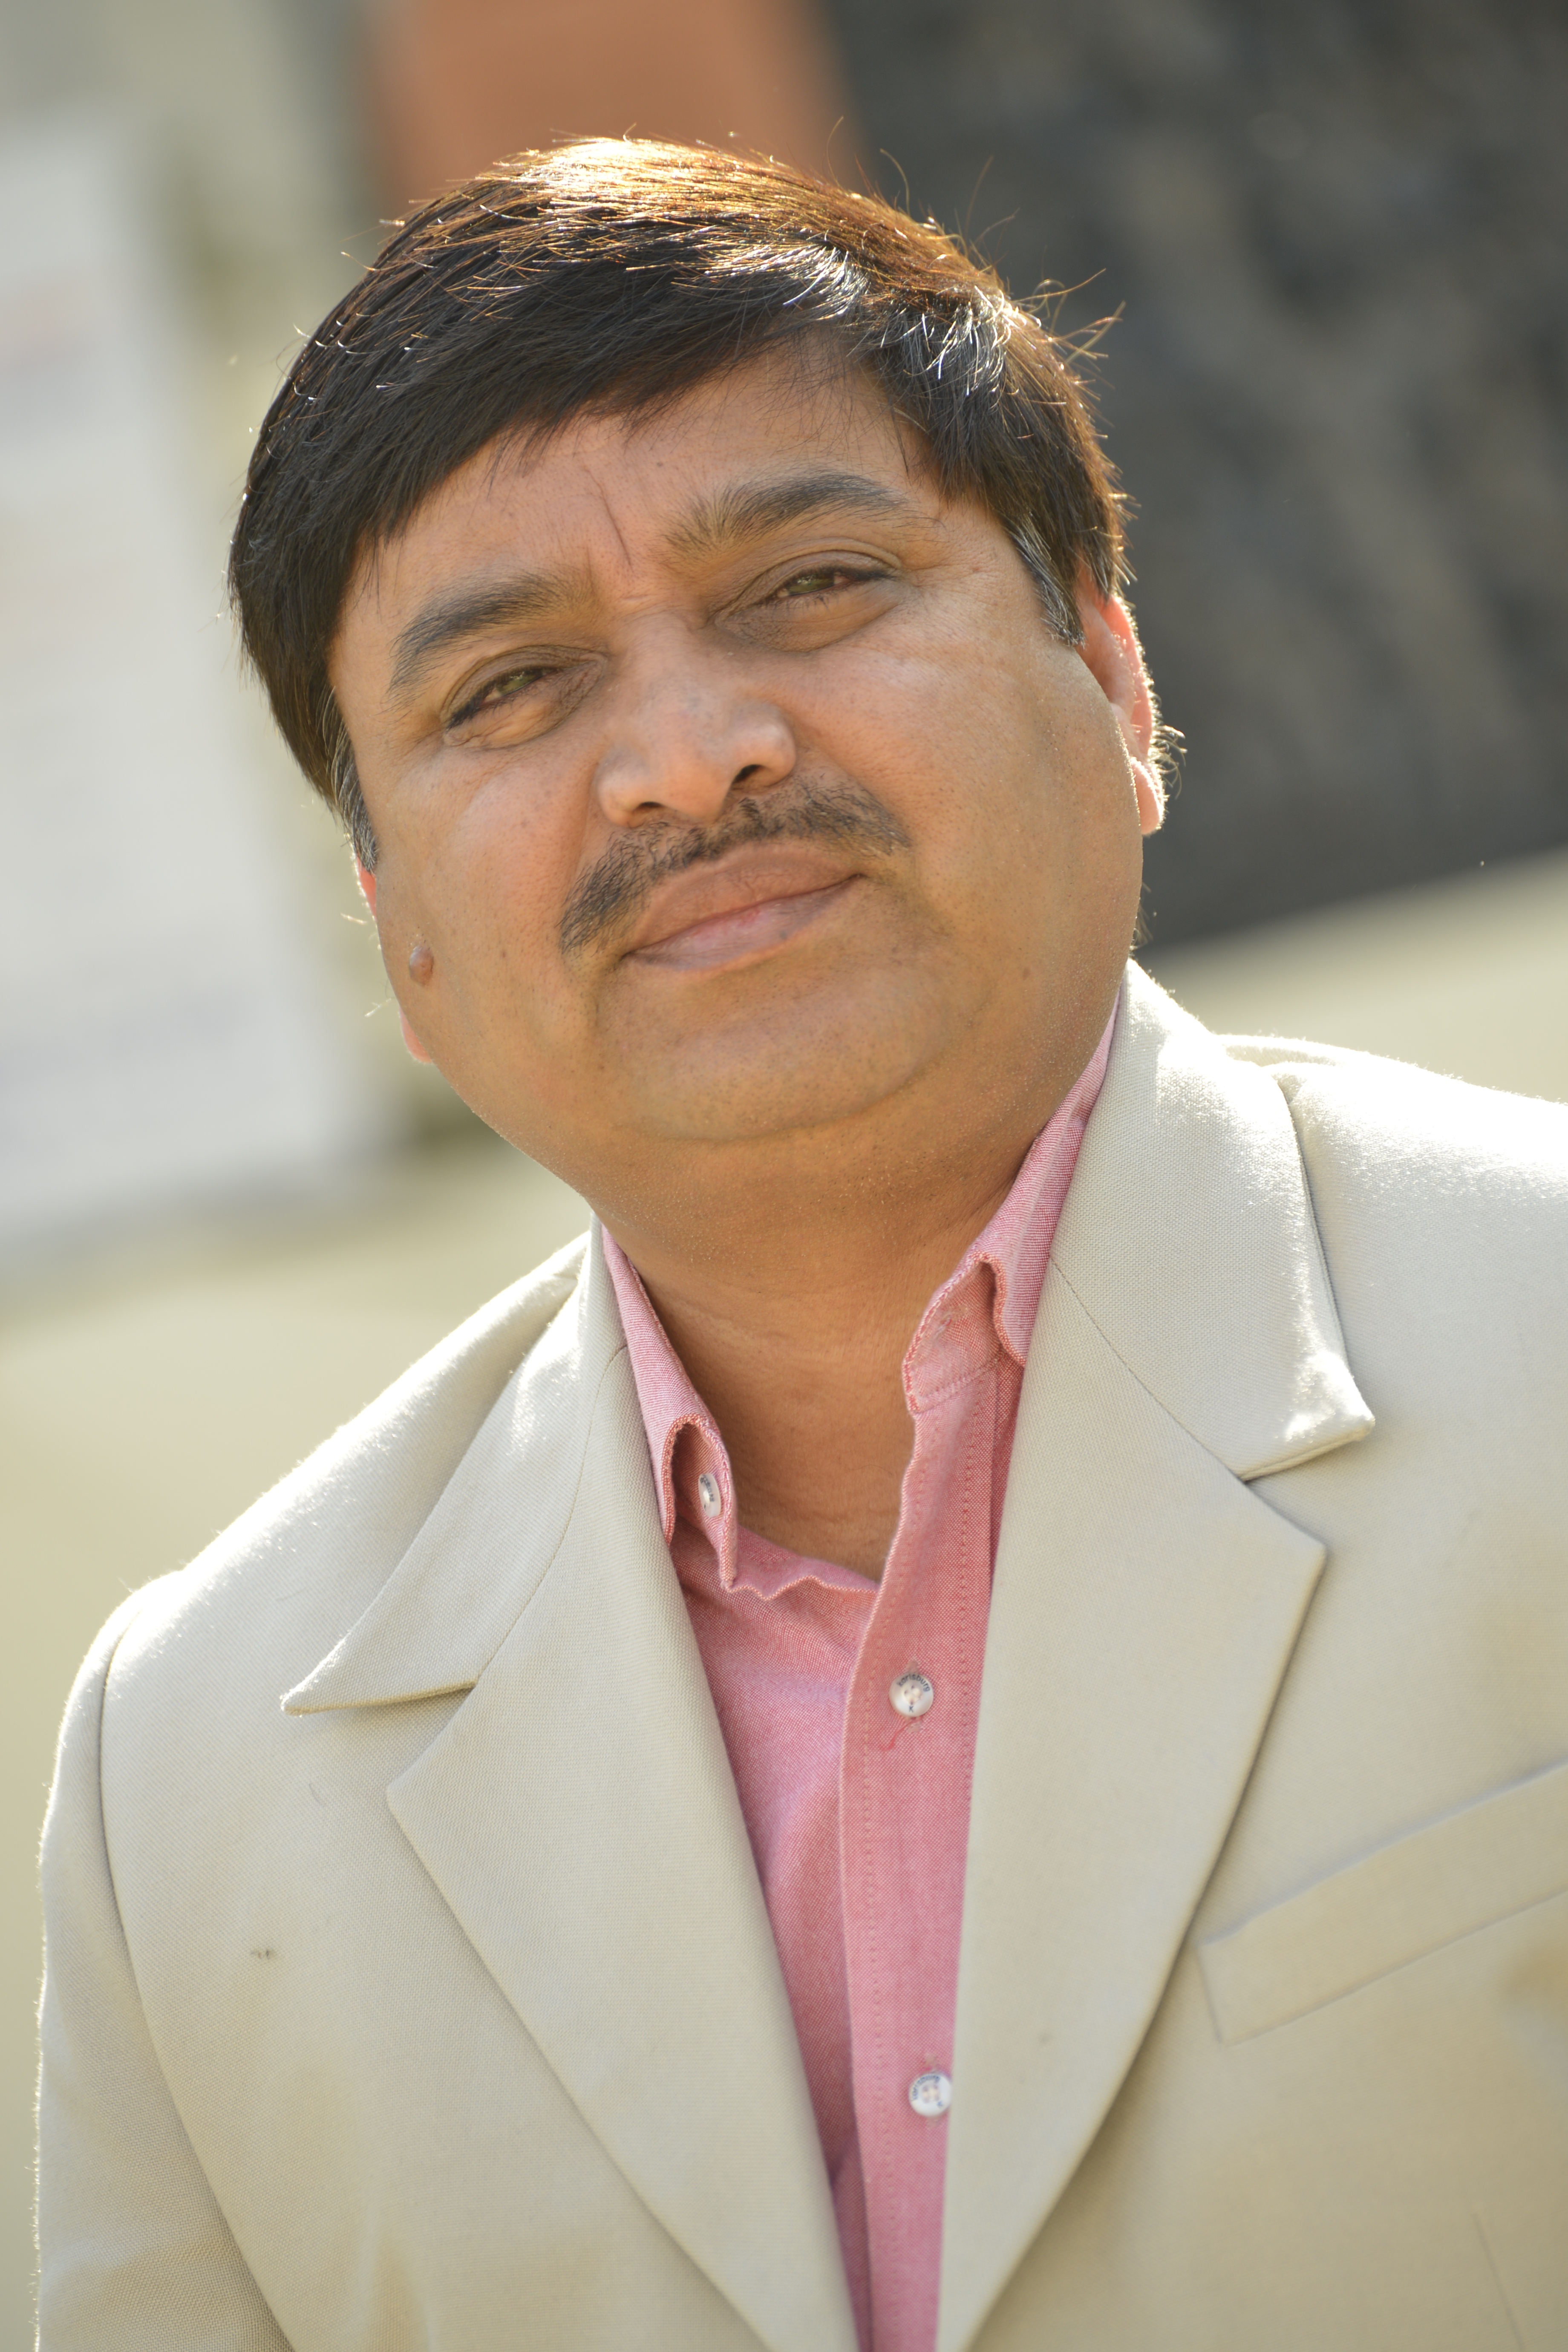 प्रो. सारंगदेवोत देंगे भारत सरकार के डिपार्टमेंट ऑफ साइंस एवं टेक्नोलॉजी की कम्प्यूटर विज्ञान की परियोजनाओं में विशेषज्ञता नेशनल सुपर कंप्यूटिंग मिशन में भी करेंगे कार्य